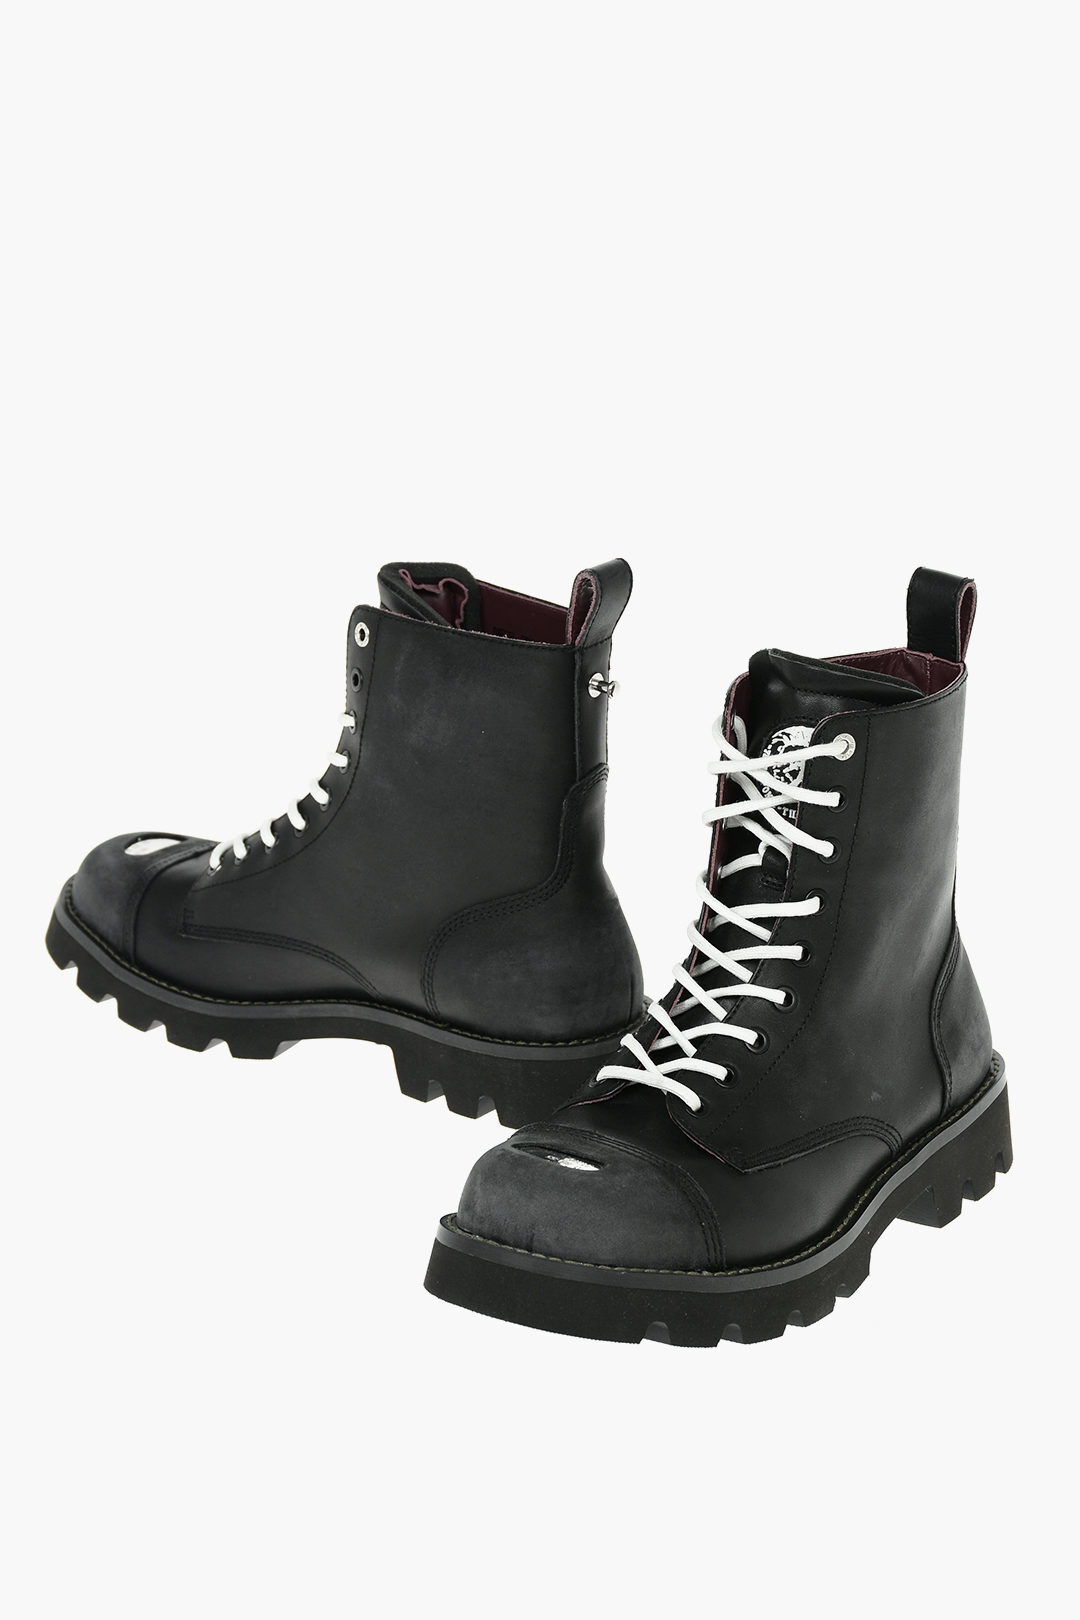 正規店仕入れの Diesel ディーゼル Black ブーツ Y P3853 T8013 メンズ Leather D Konba Cb Combat Boots Dk Fucoa Cl